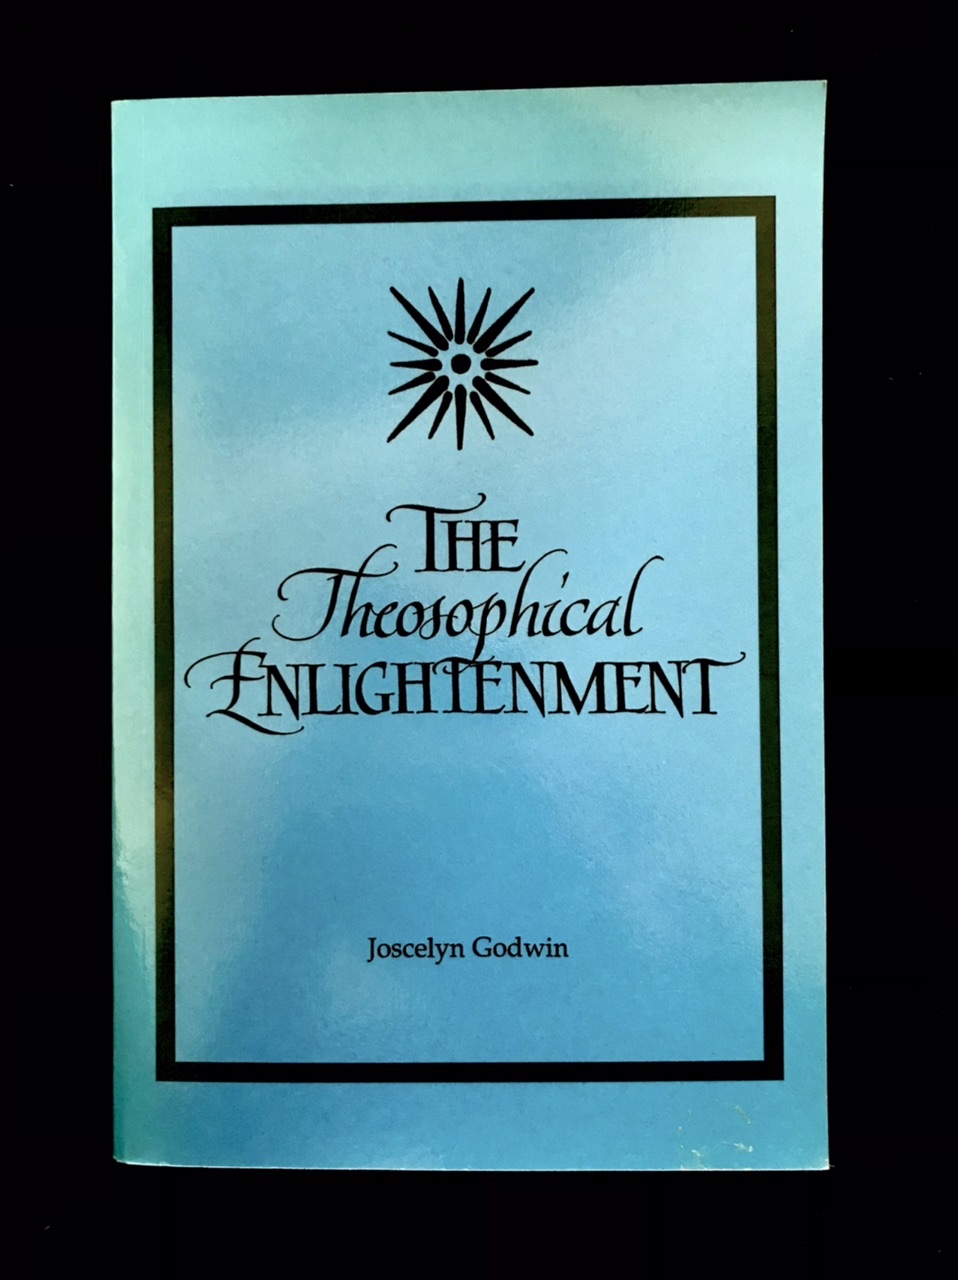 The Theosophical Enlightenment by Joscelyn Godwin